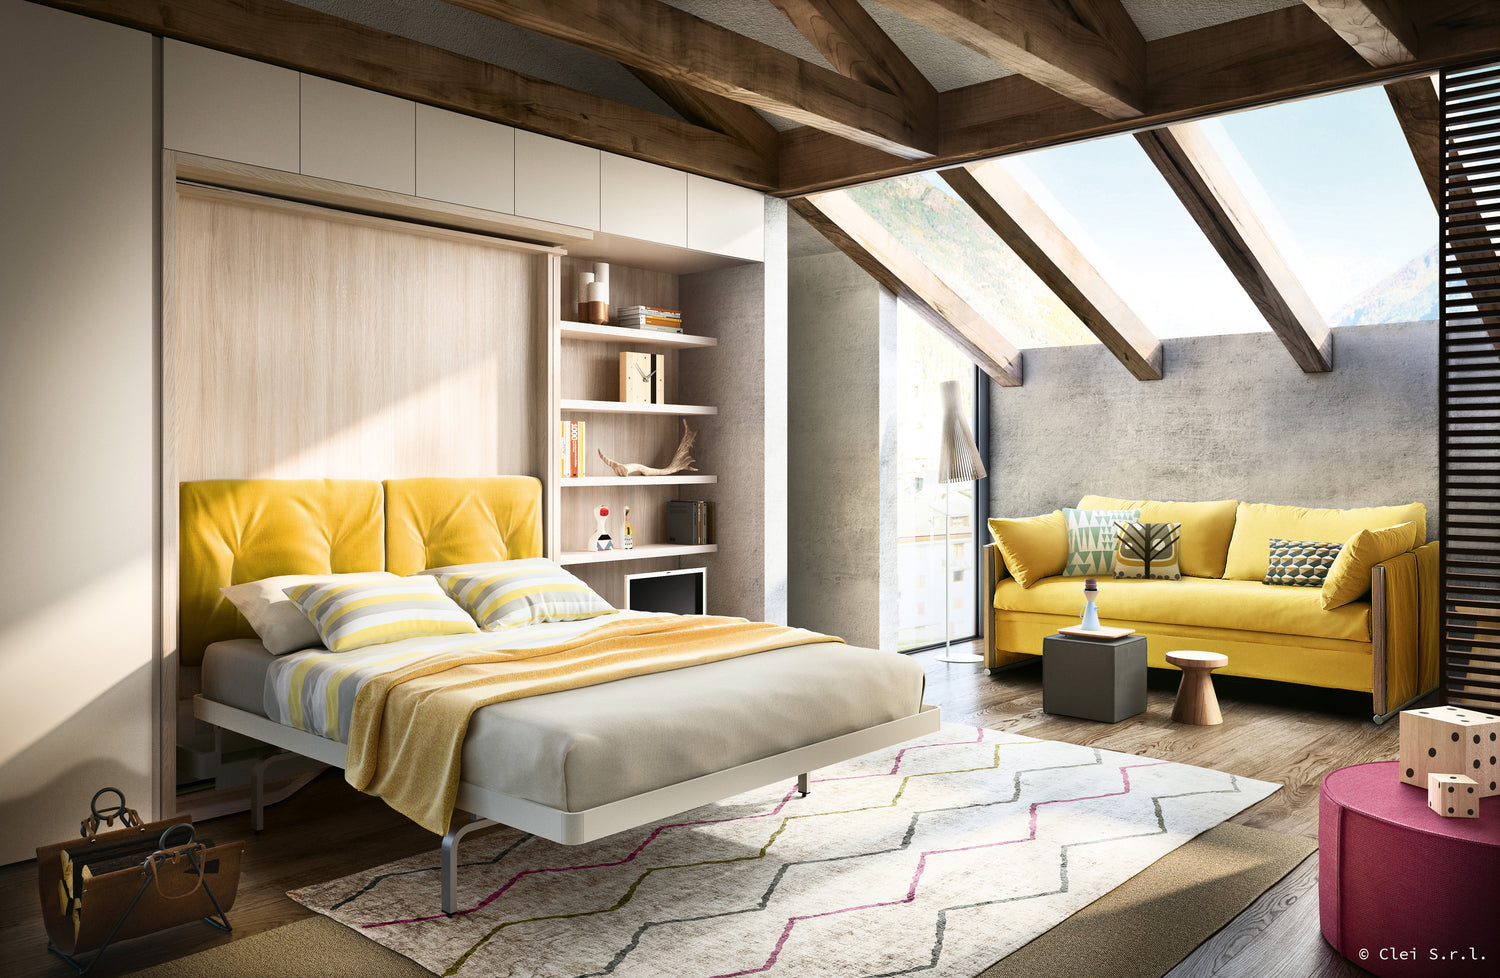 Choisir le design de son lit escamotable : coloris et style